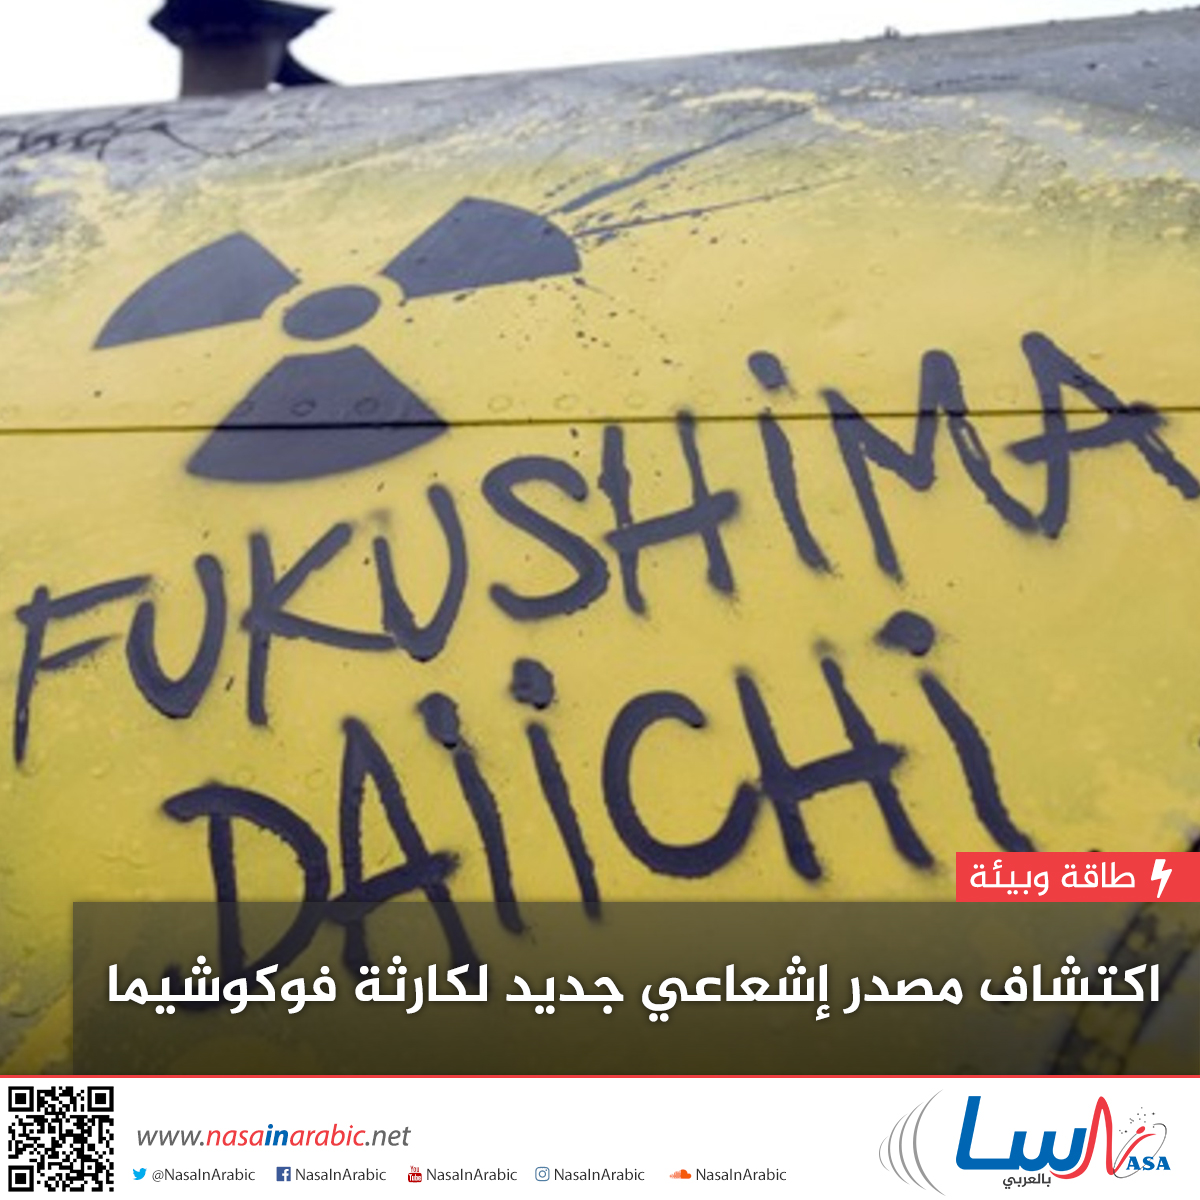 اكتشاف مصدر إشعاعي جديد لكارثة فوكوشيما